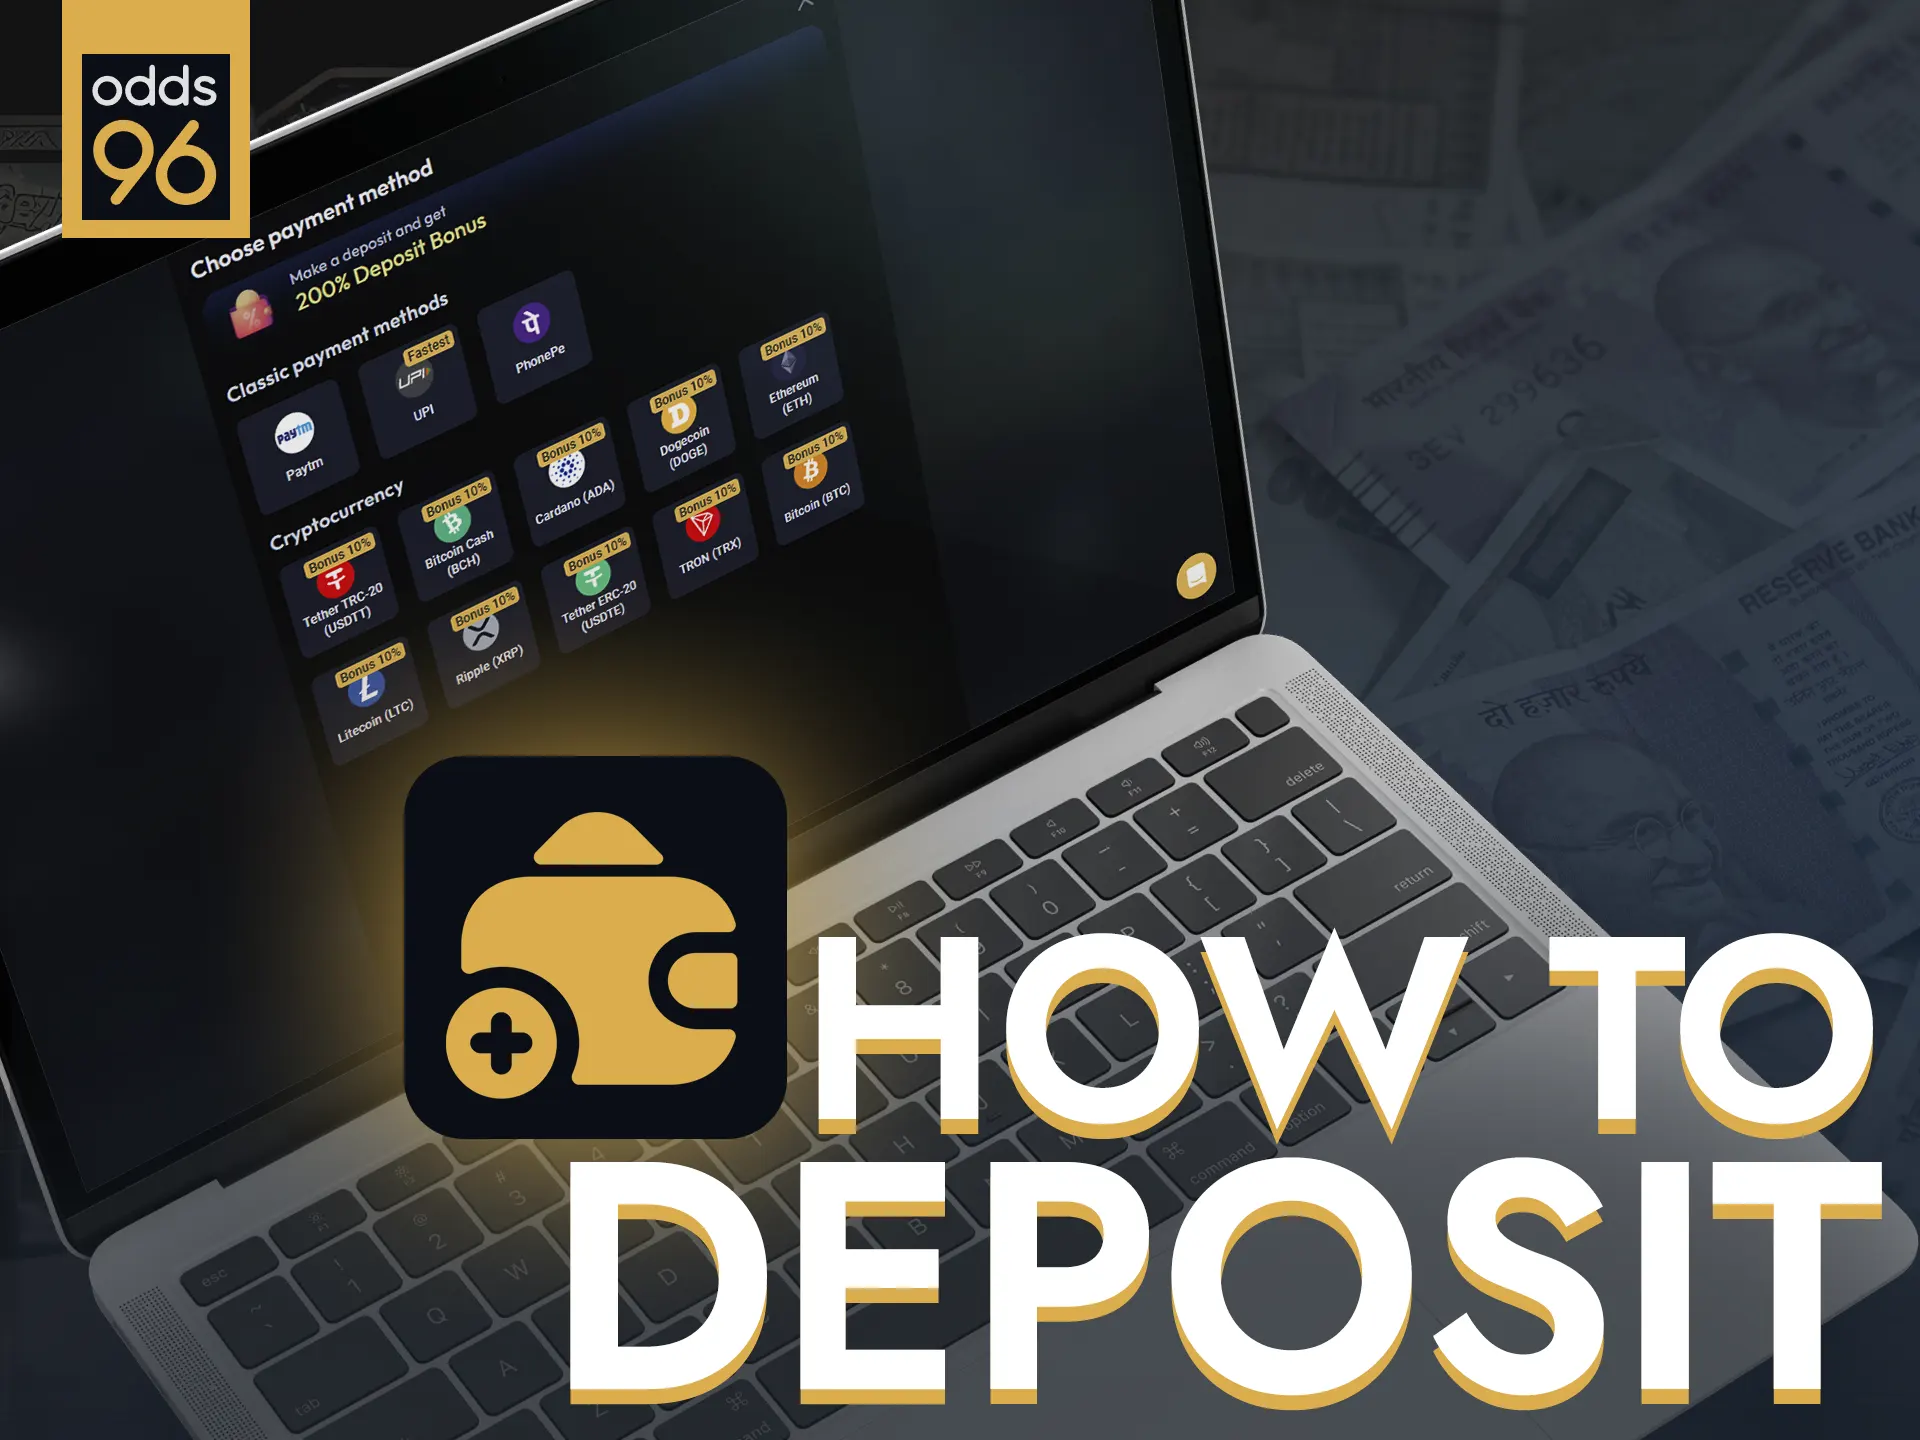 Deposit funds easily on Odds96 website.